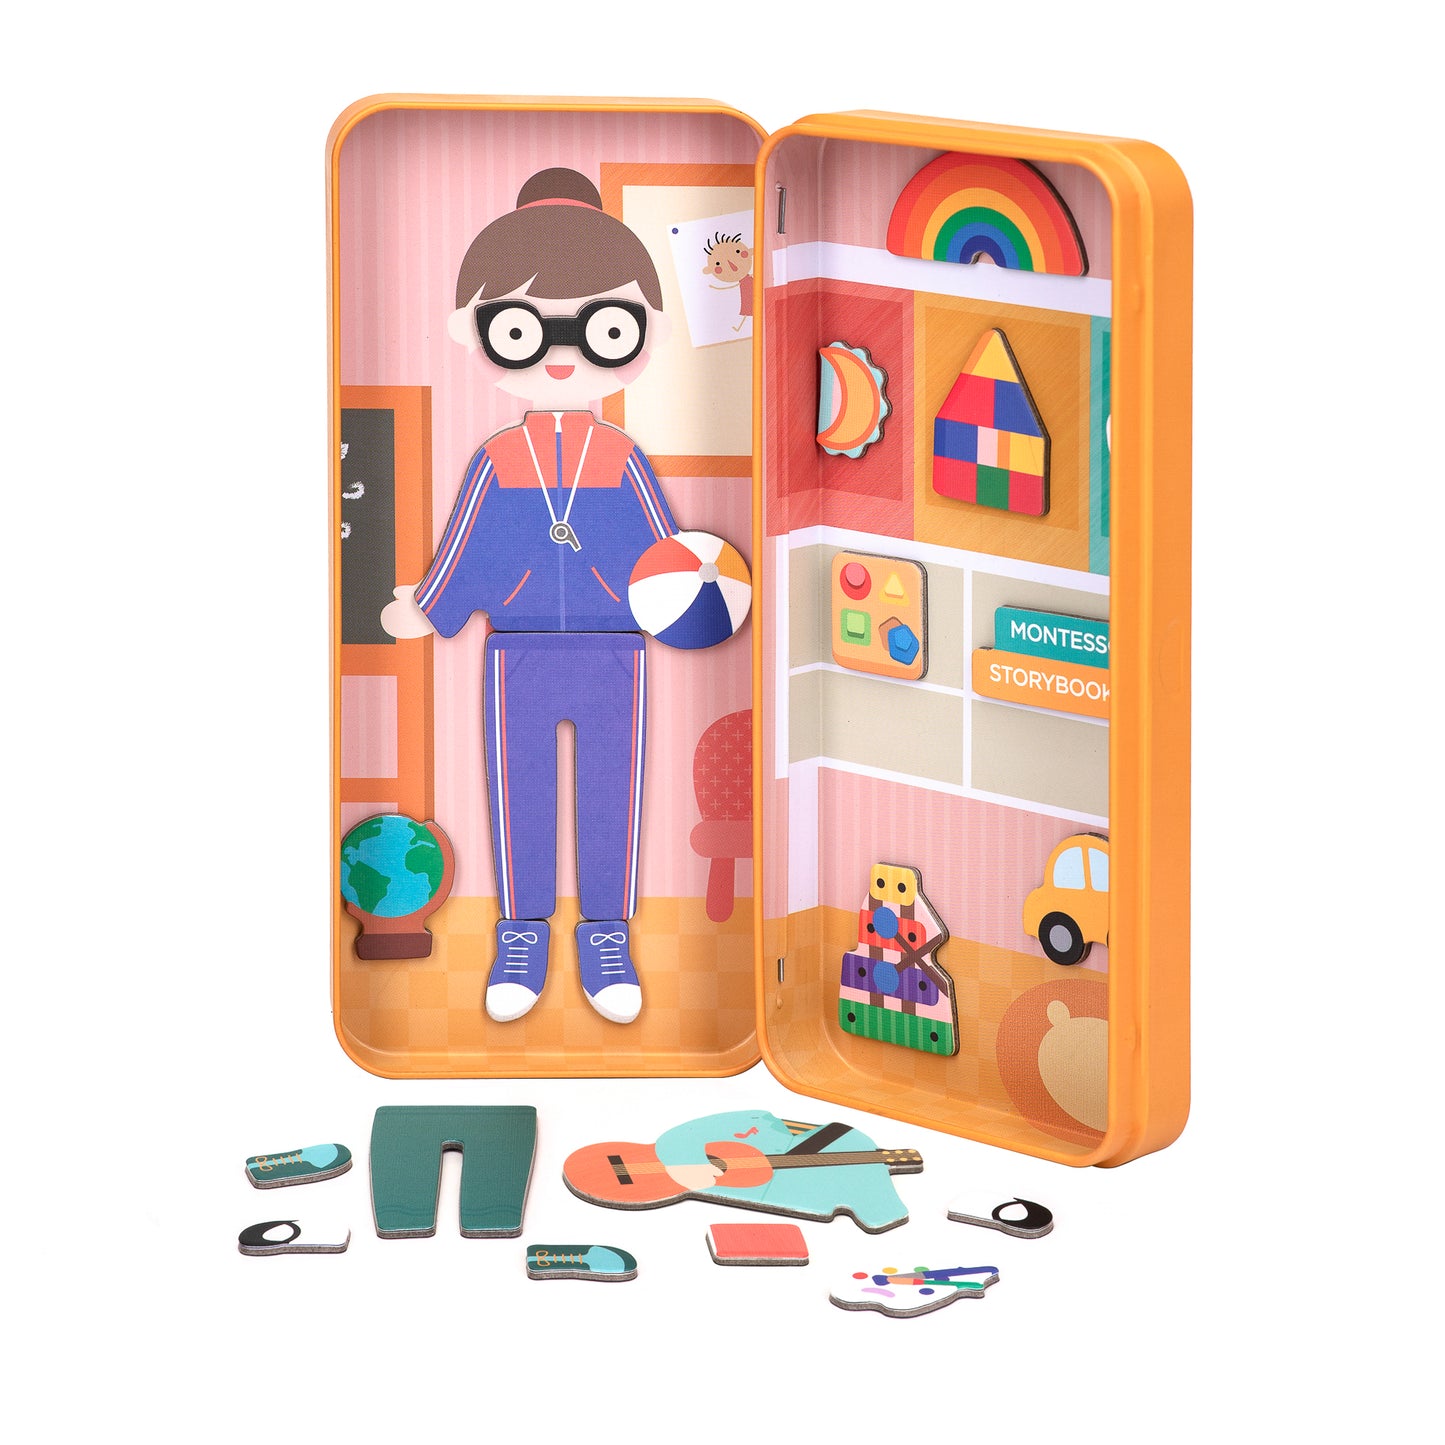 mierEdu Magnetspiel Box, Lehrerin, Fördert Motorik und Fantasie, Ideal für Zuhause und als Reisespiel für Kinder, Magnet Spielzeug ab 3 Jahr